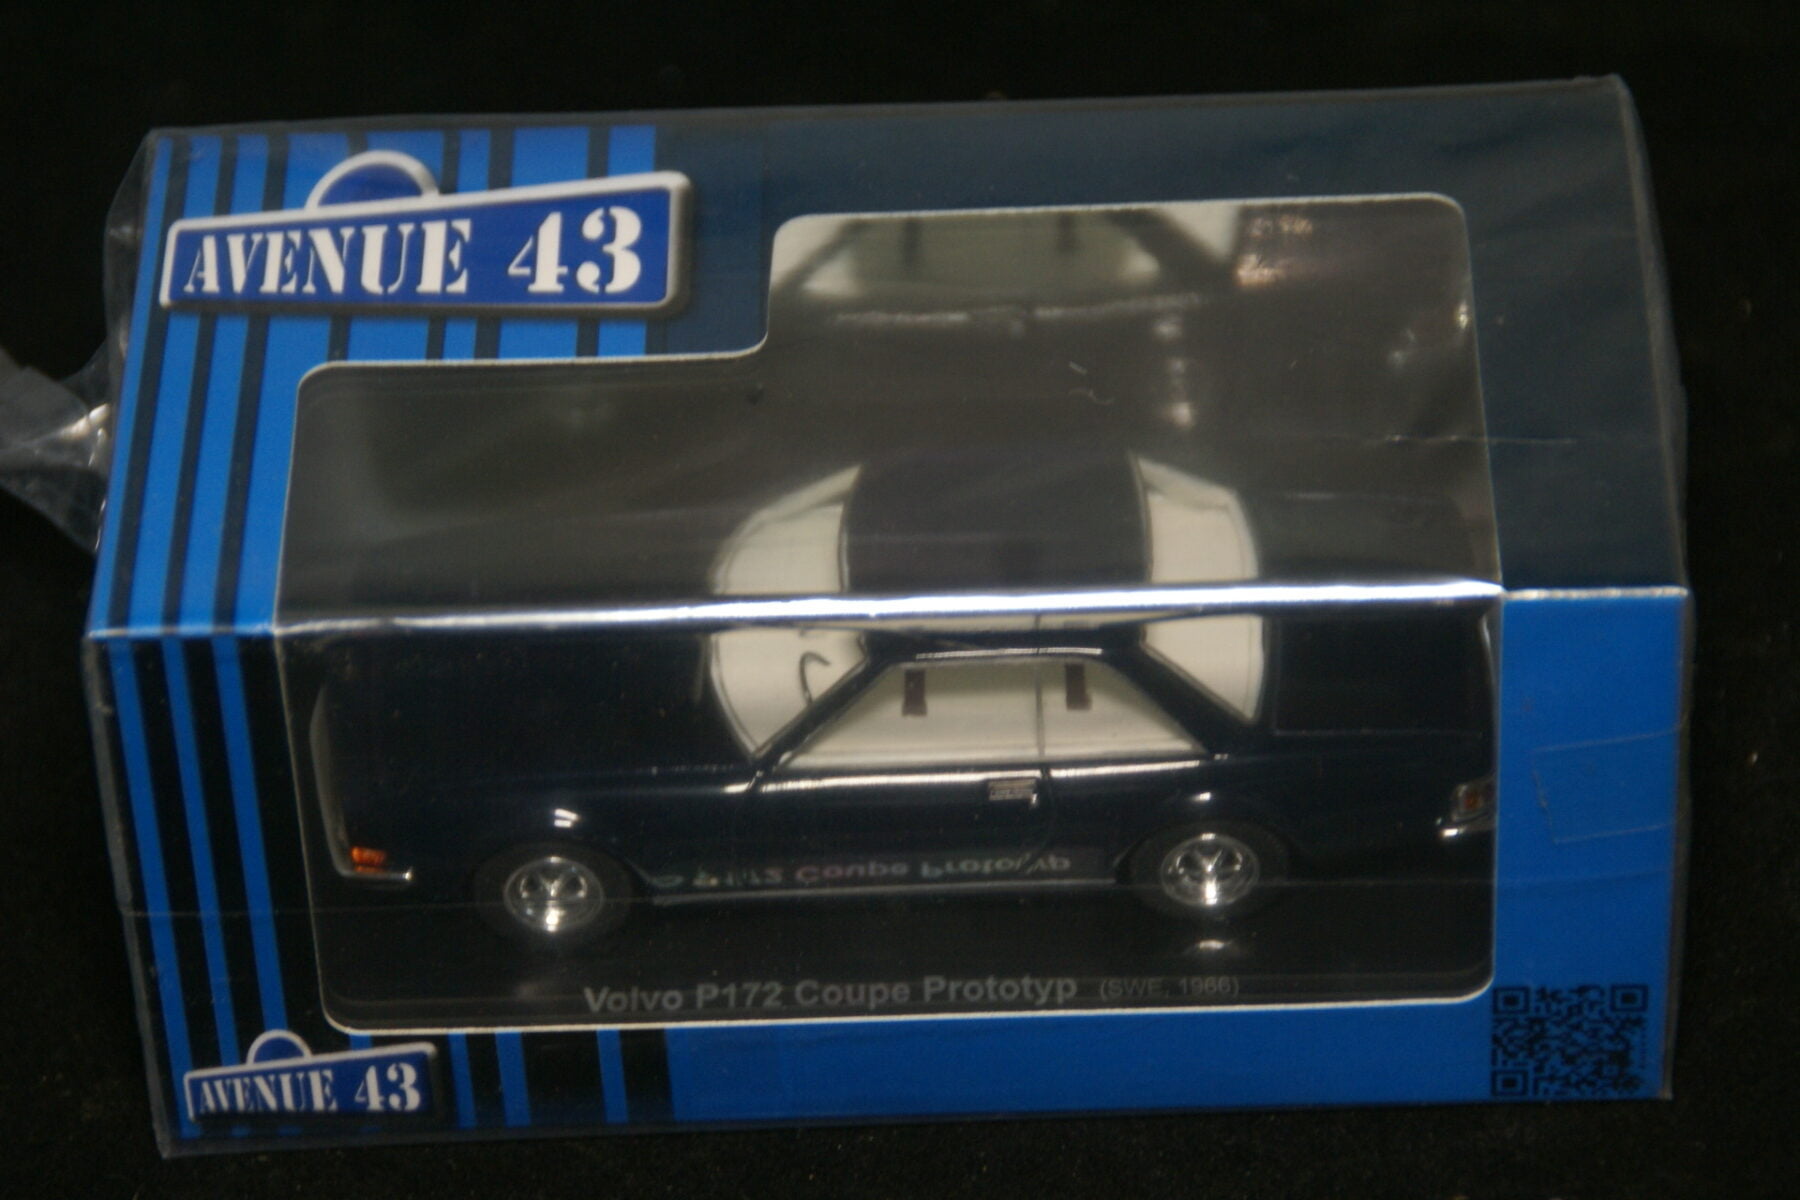 DSC09675 1966 miniatuur Volvo P172 prototype blauw 1op43 Avenue 43 nr 60007 MB-80be4e27